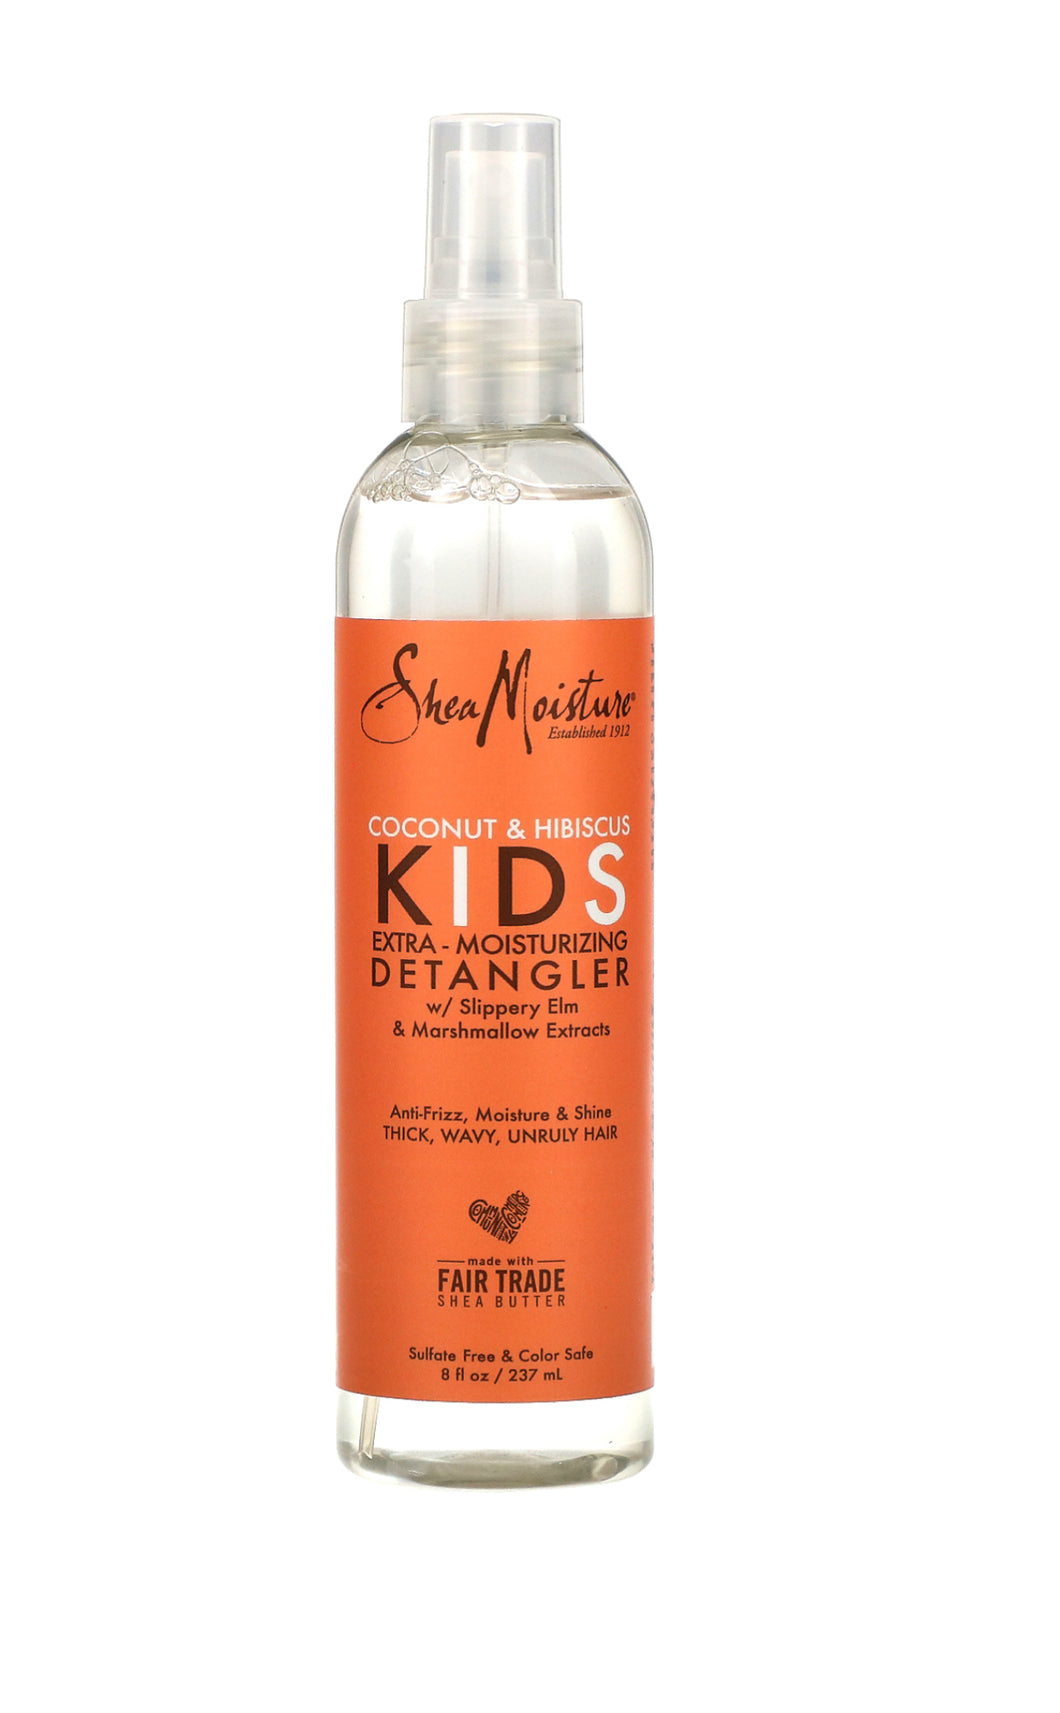 Shea Moisture Kids Detangler - Coconut & Hibiscus Kids Extra-Moisturizing Detangler Spray